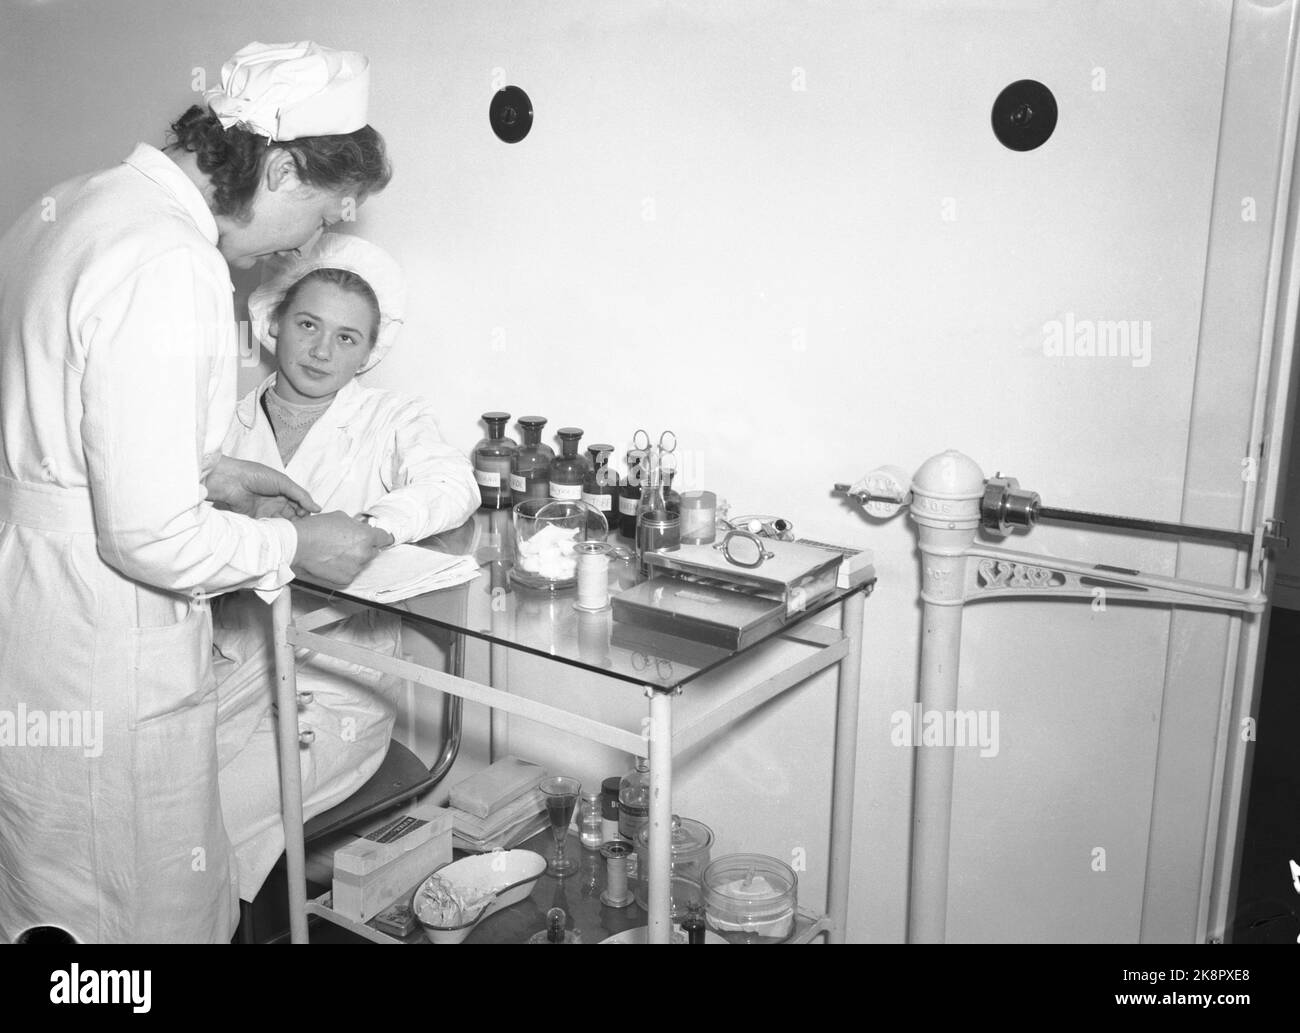 Oslo. Fabbrica di cioccolato Freia. Una lavoratrice viene indagata dall'infermiere dell'azienda. Servizio sanitario aziendale. Foto: NTB Foto Stock